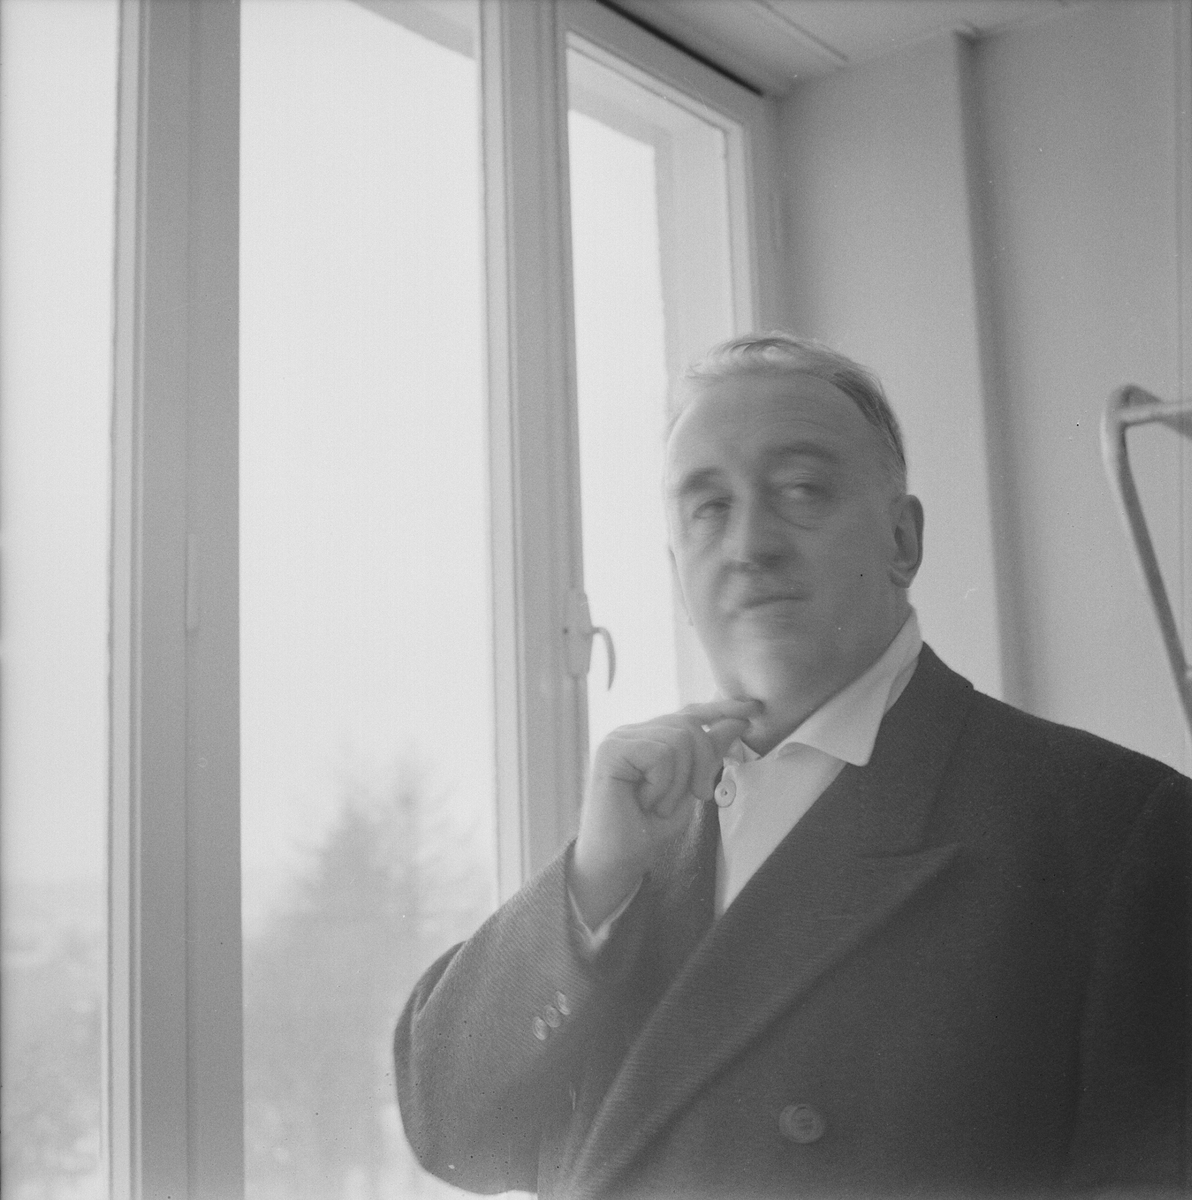 Akademiska sjukhuset, professor Ask-Uppmark i nya medicinska kliniken, Uppsala, februari 1962